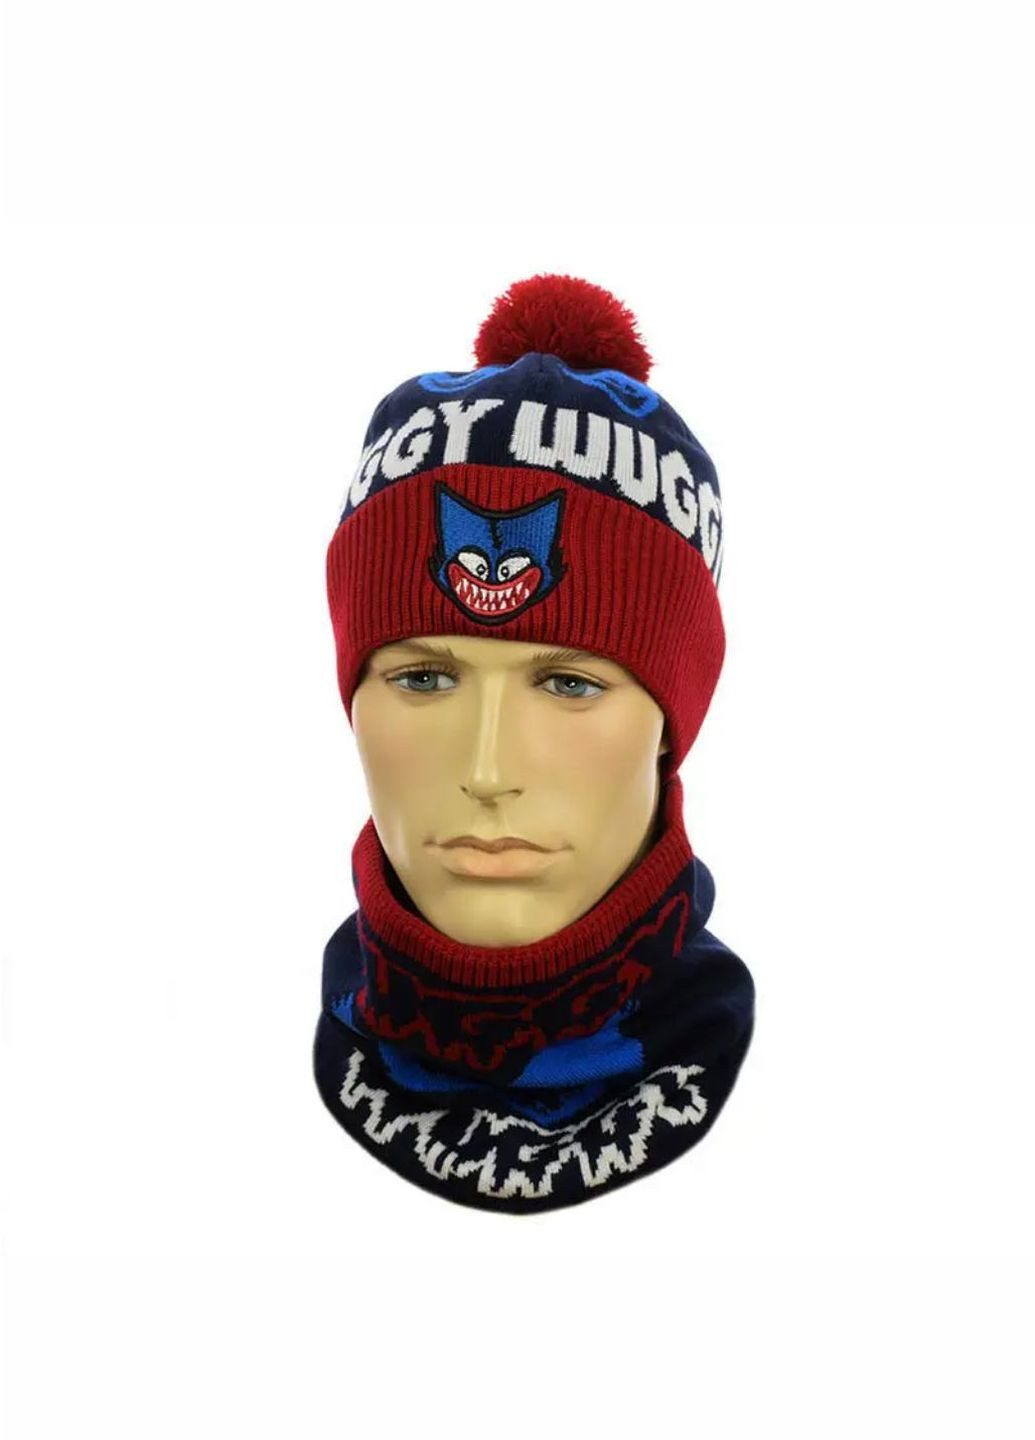 Дитячій зимовий комплект шапка з помпоном + снуд Хагі Вагі / Huggy Wuggy No Brand дитячій комплект шапка + снуд (277167397)